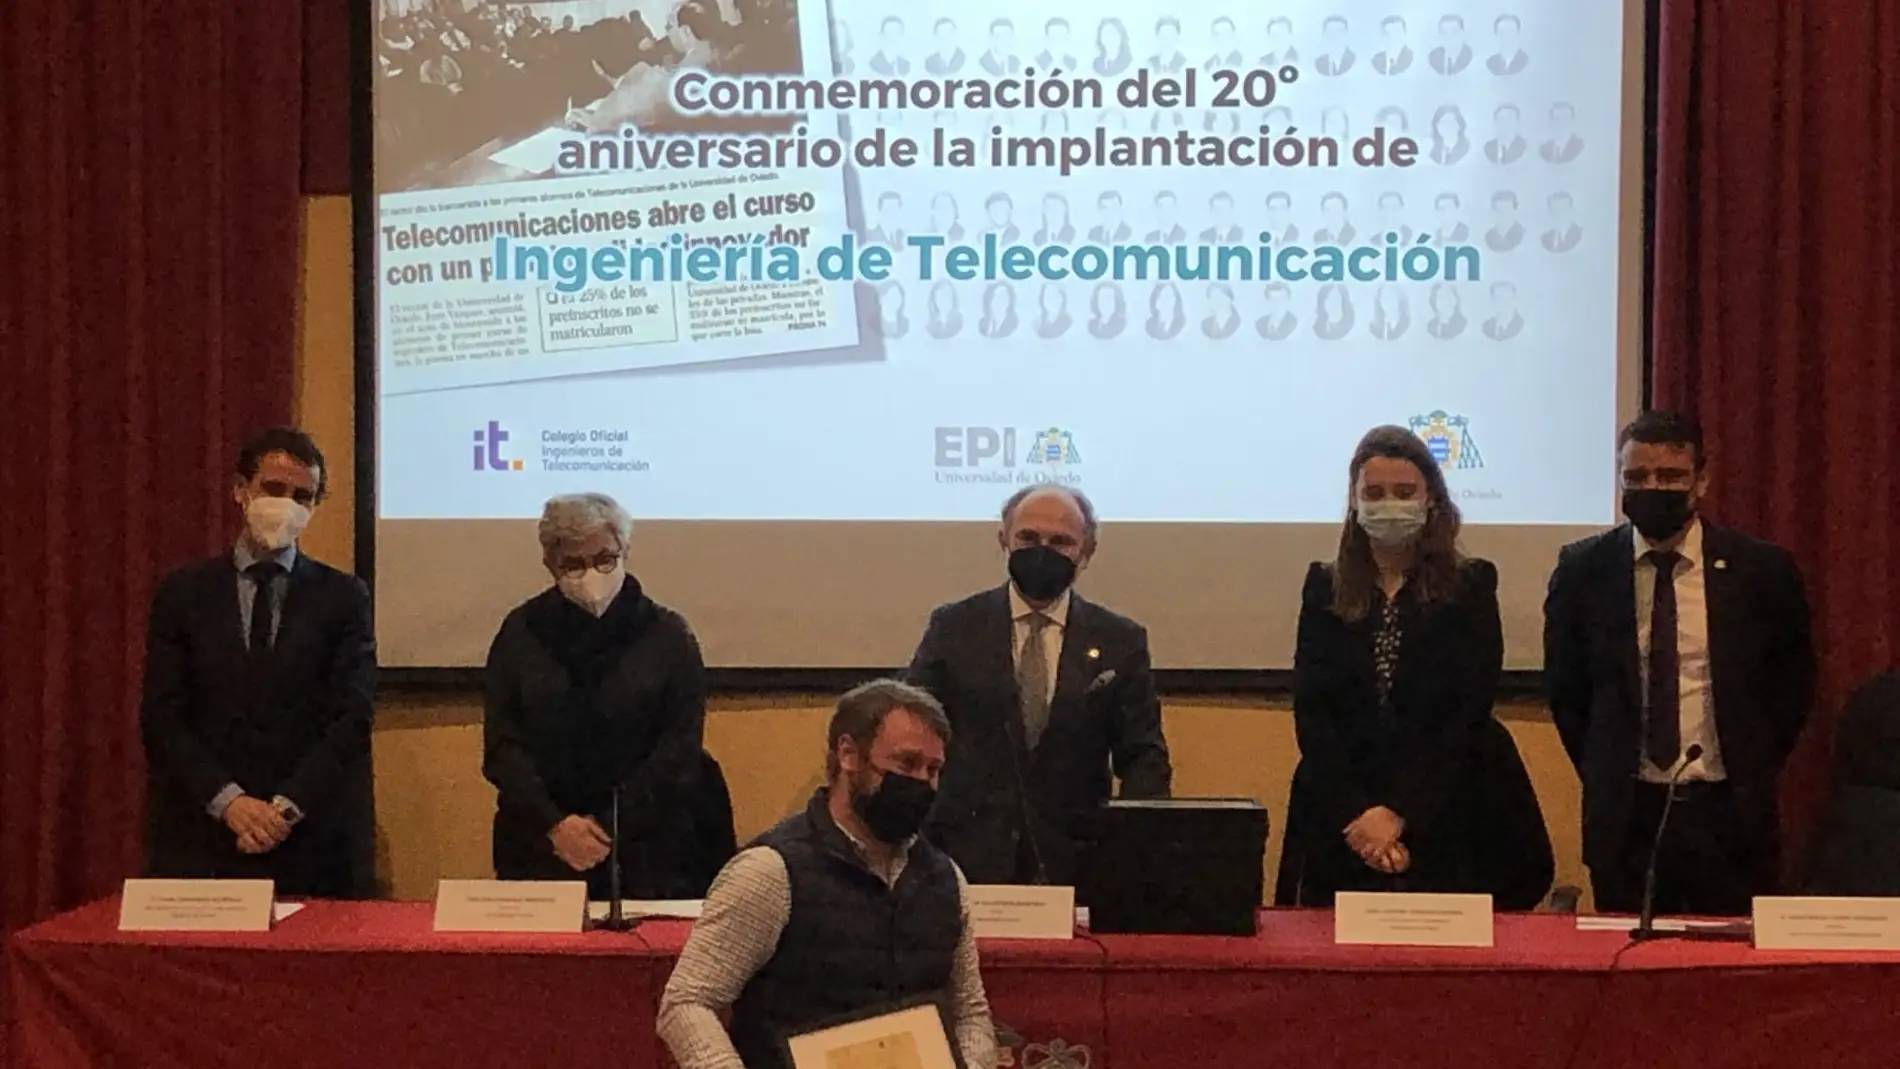 Telecomunicaciones celebra su 20 aniversario